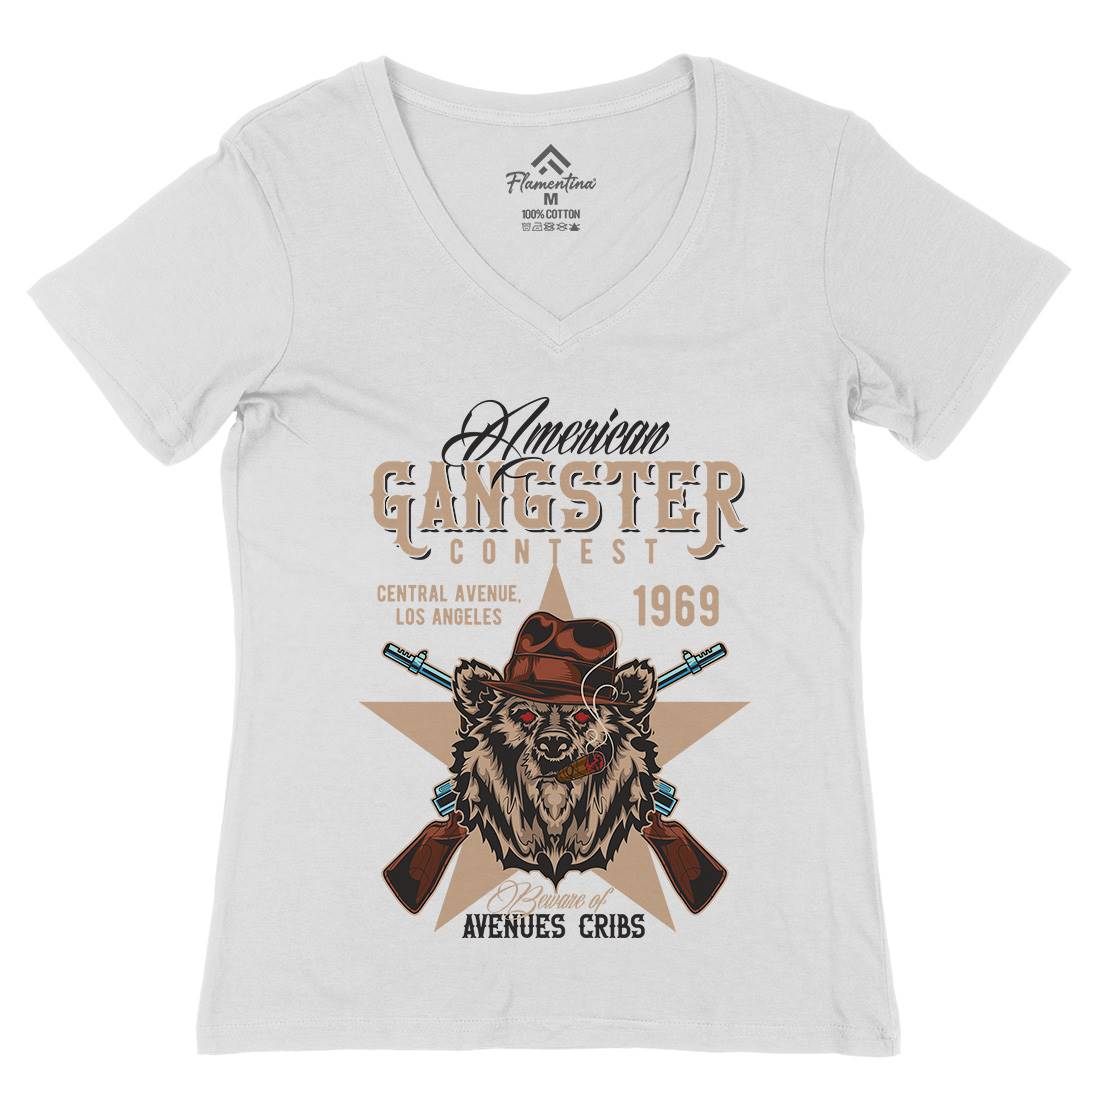 Gangster Womens Organic V-Neck T-Shirt American B128